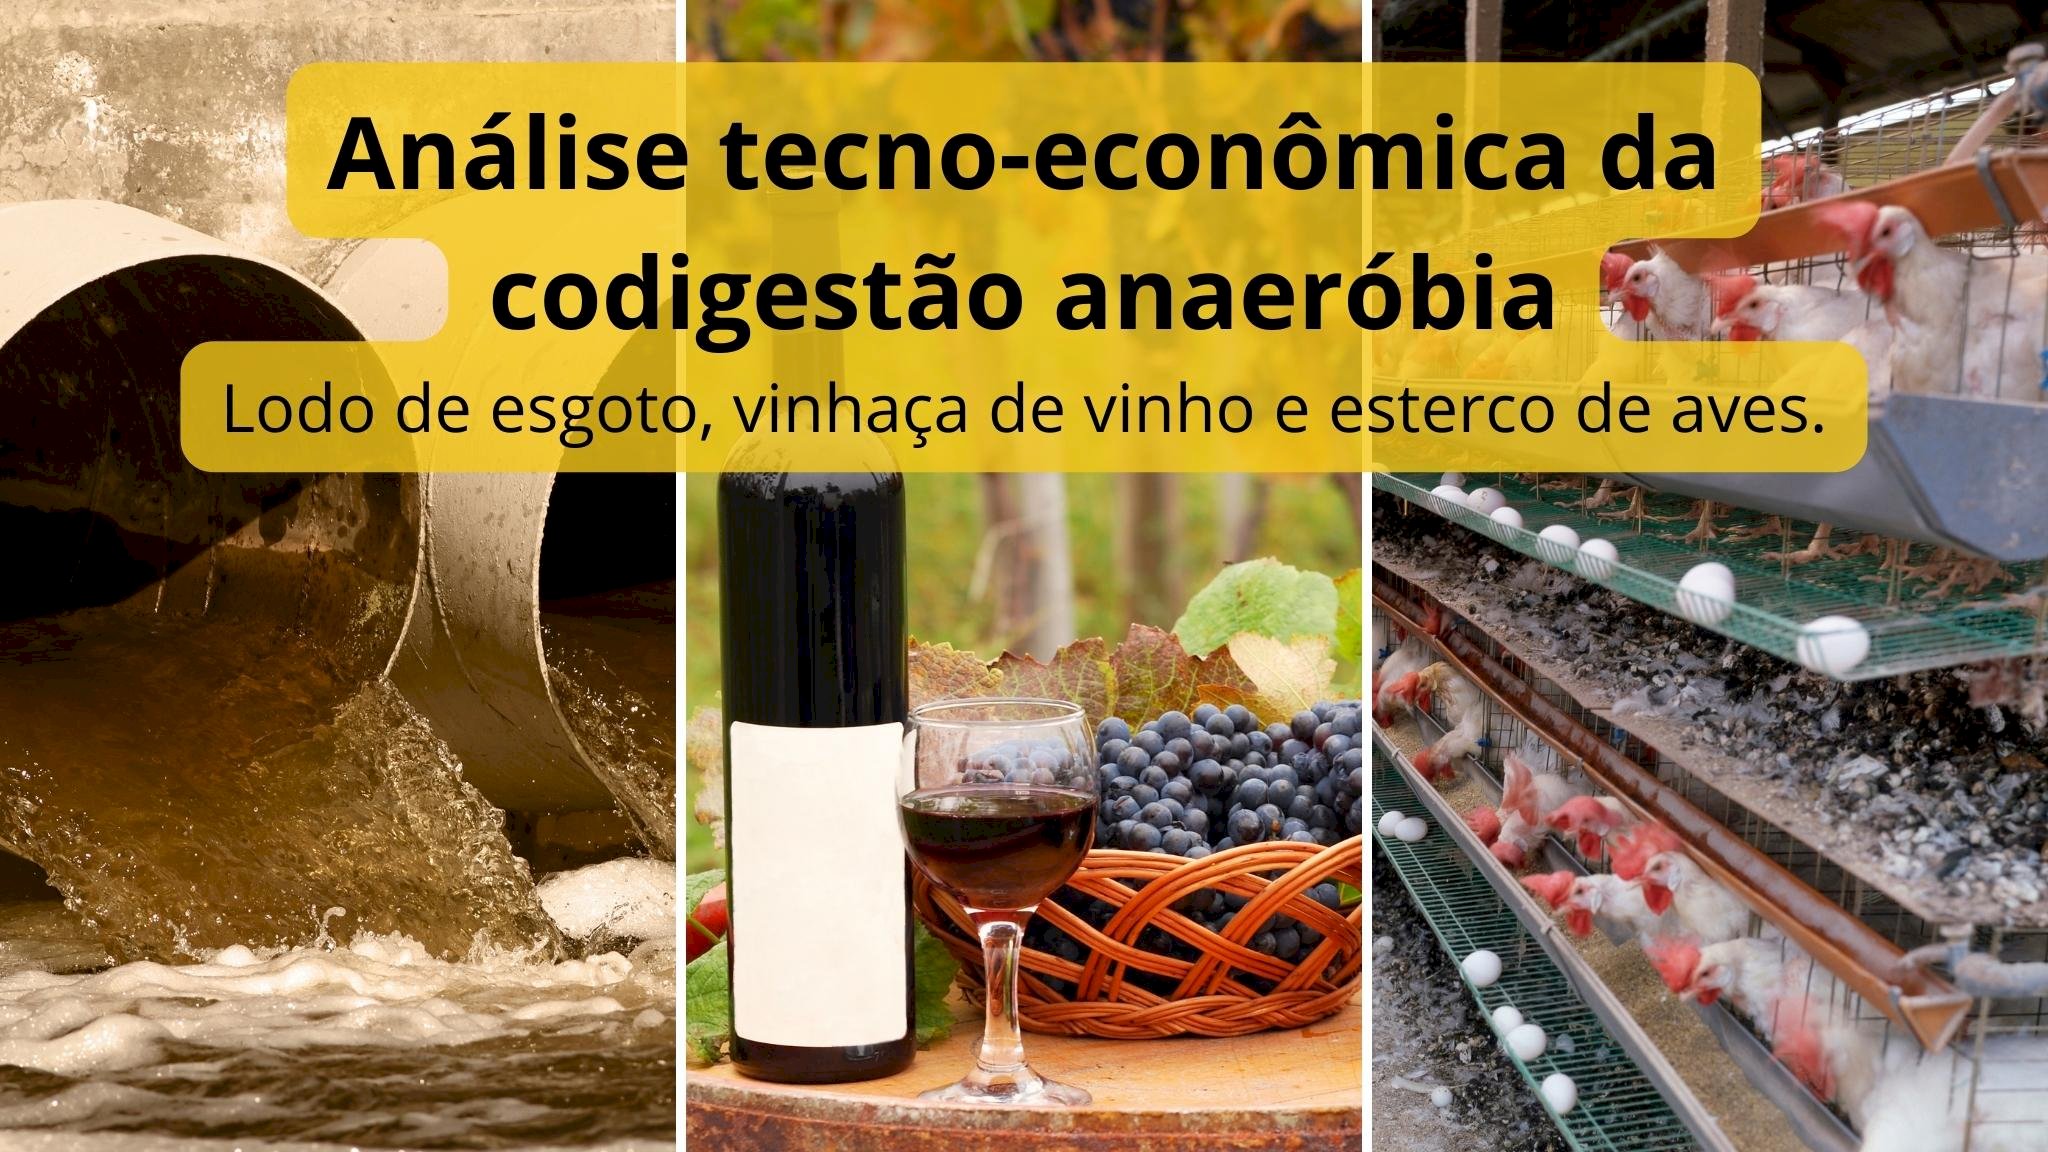 Estudo analisa o potencial tecno-econômico da codigestão anaeróbia do lodo de esgoto, vinhaça de vinho e esterco de aves